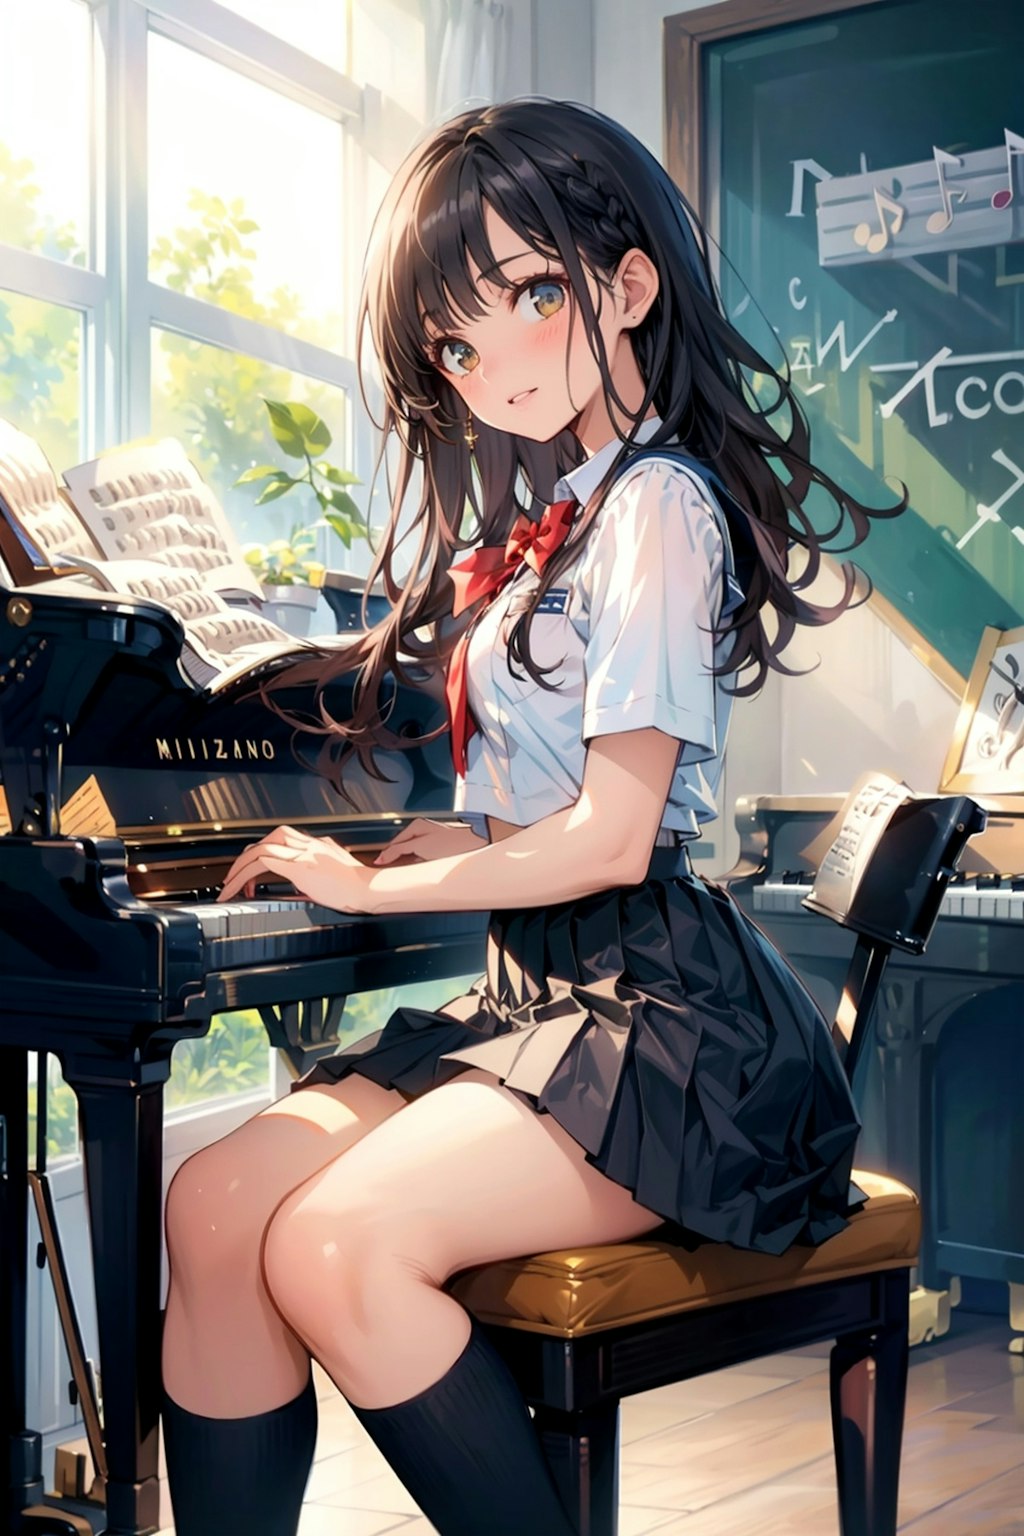 ピアノと彼女